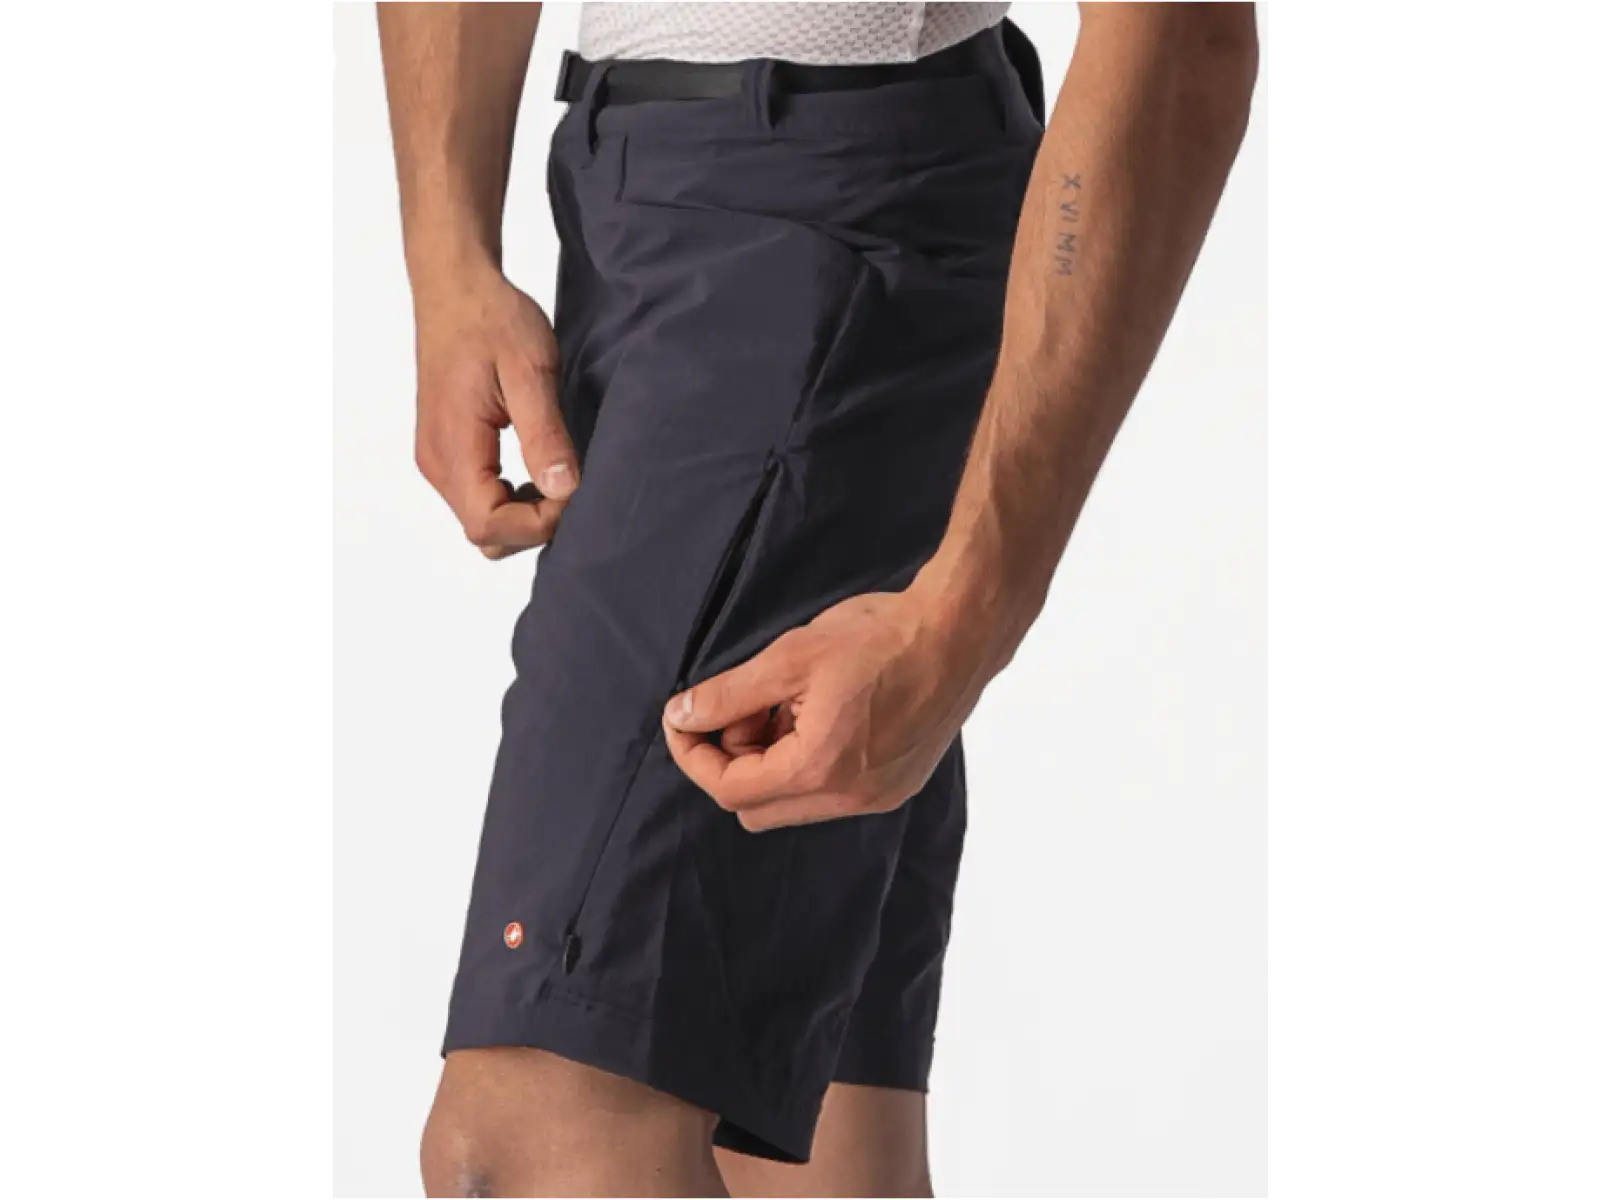 Castelli Unlimited Trail pánské kalhoty volné bez vložky černá